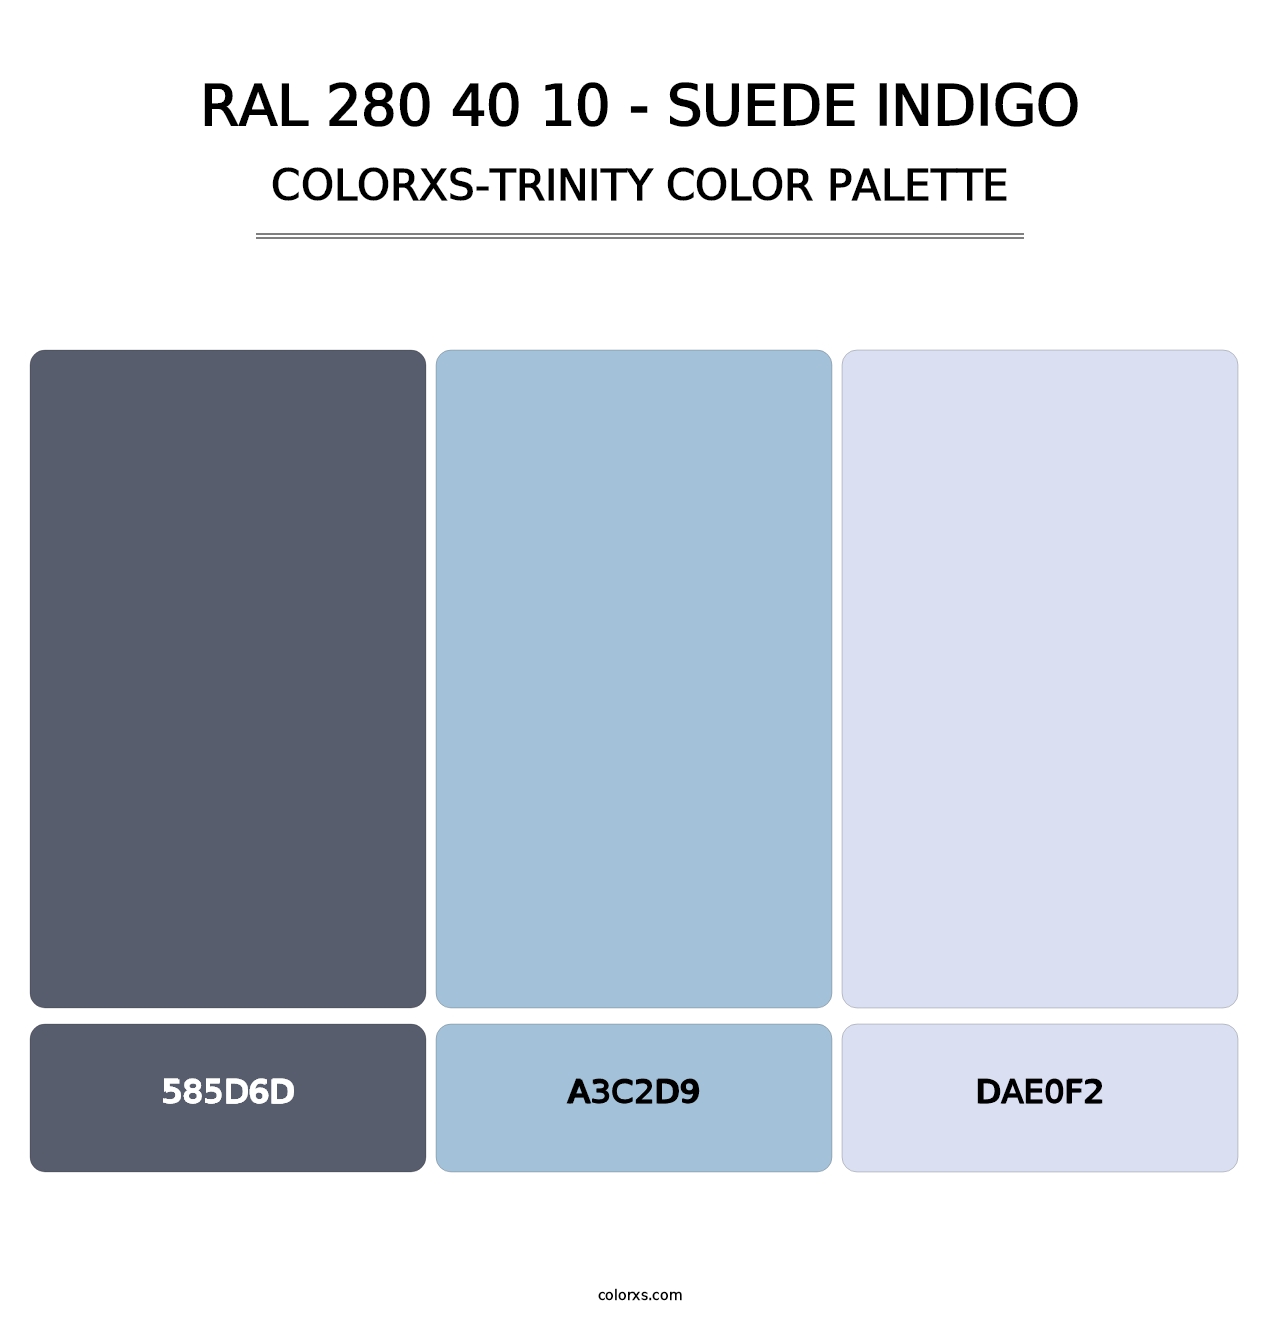 RAL 280 40 10 - Suede Indigo - Colorxs Trinity Palette